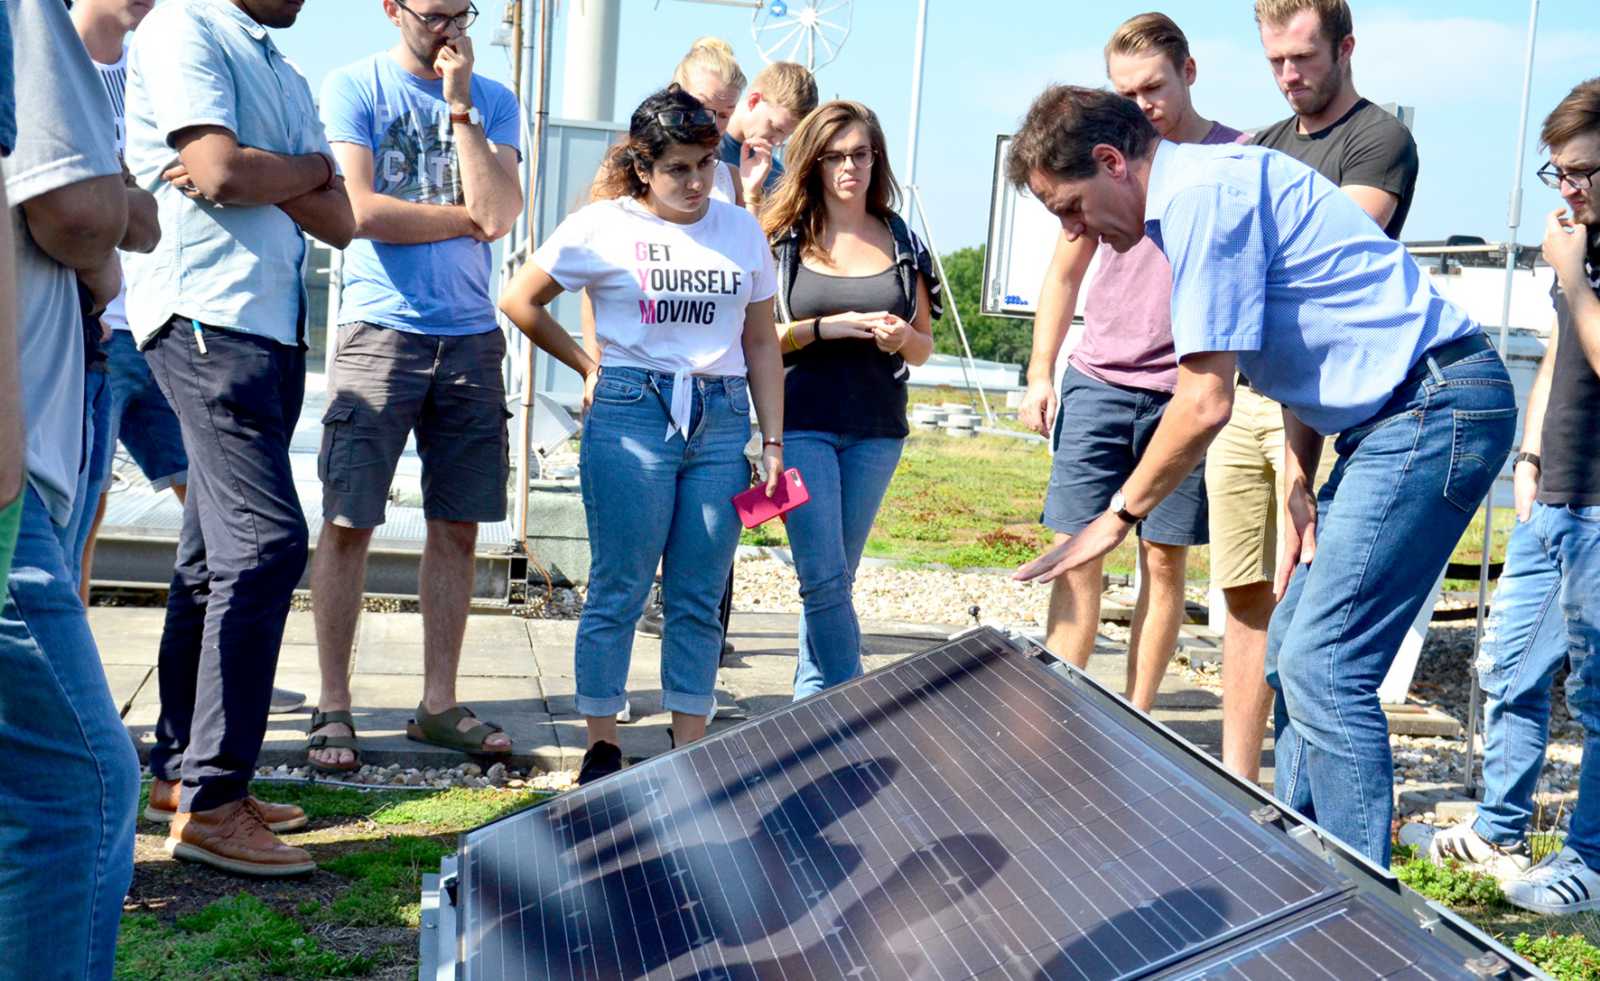 Photovoltaik-Lektion auf dem Dach: Prof. Dr. Konrad Mertens erklärte den Summer School-Teilnehmenden, wie Solarpanels funktionieren. (Foto: FH Münster/Pressestelle)